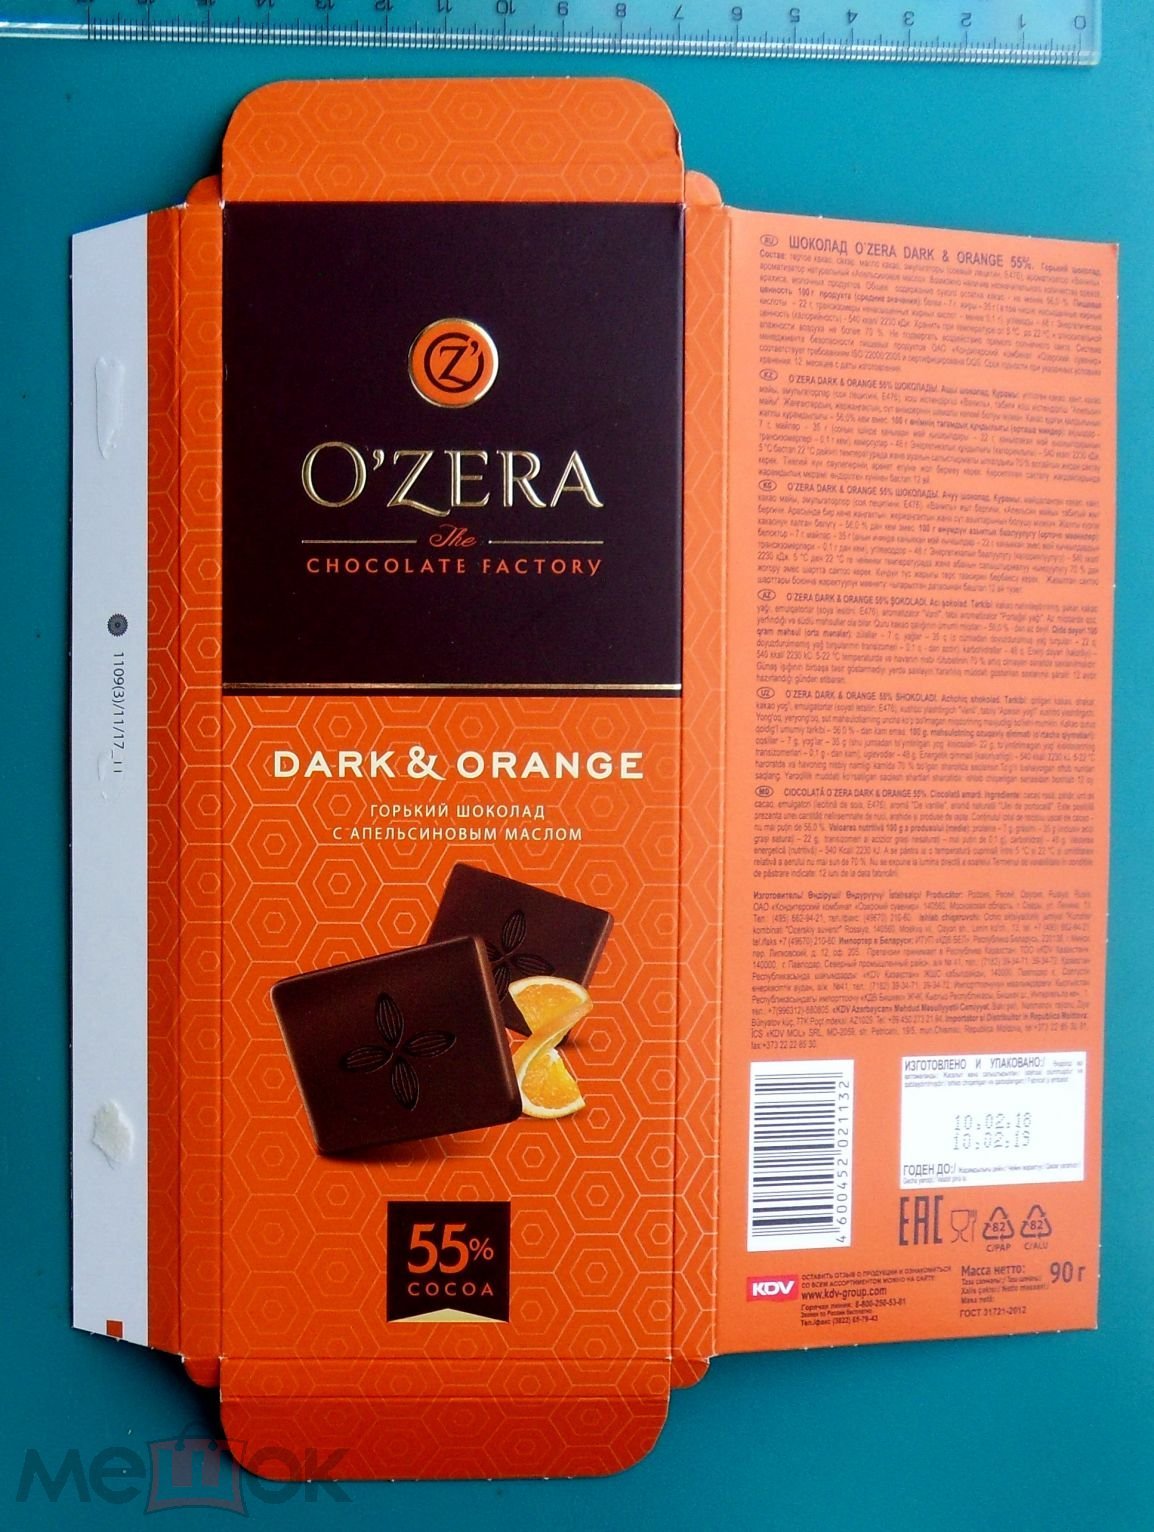 Озеры кондитерская. Шоколад Ozera шоколад 90. Конфеты o'Zera Горький шоколад. Озерский сувенир шоколад. Озерский сувенир конфеты.